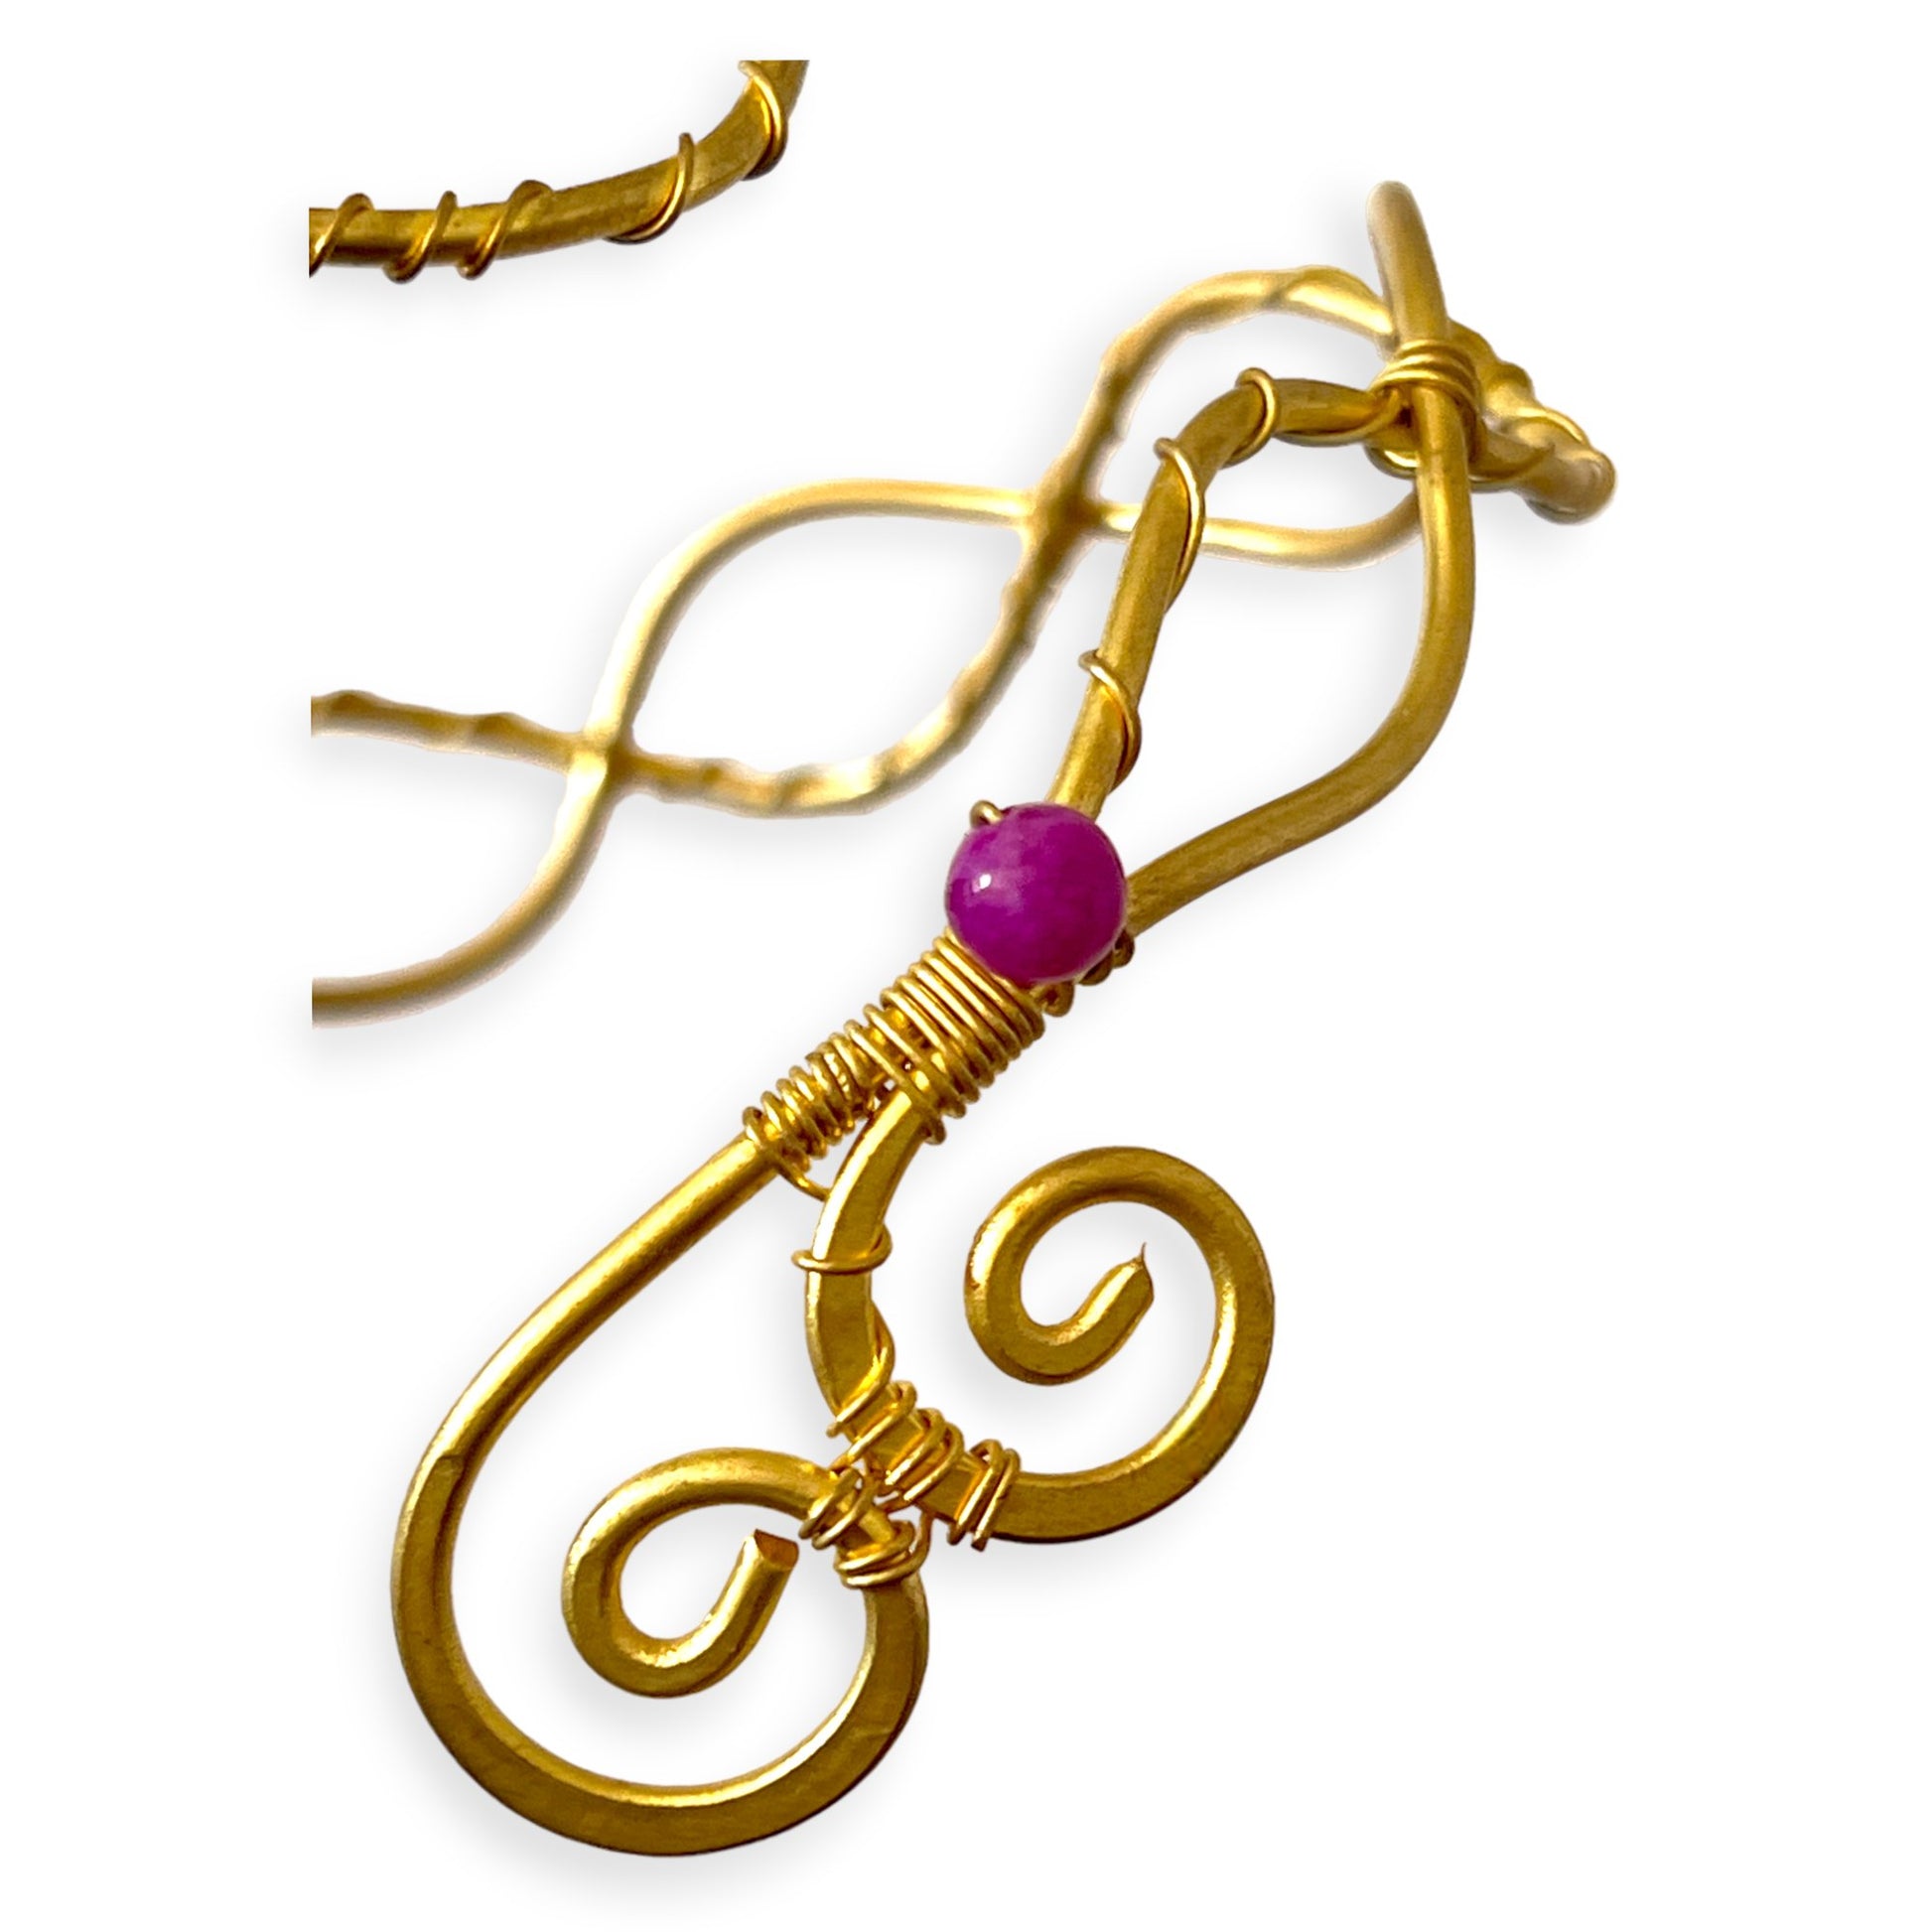 Serpentine pattern with purple gemstones arm band - Sundara Joon